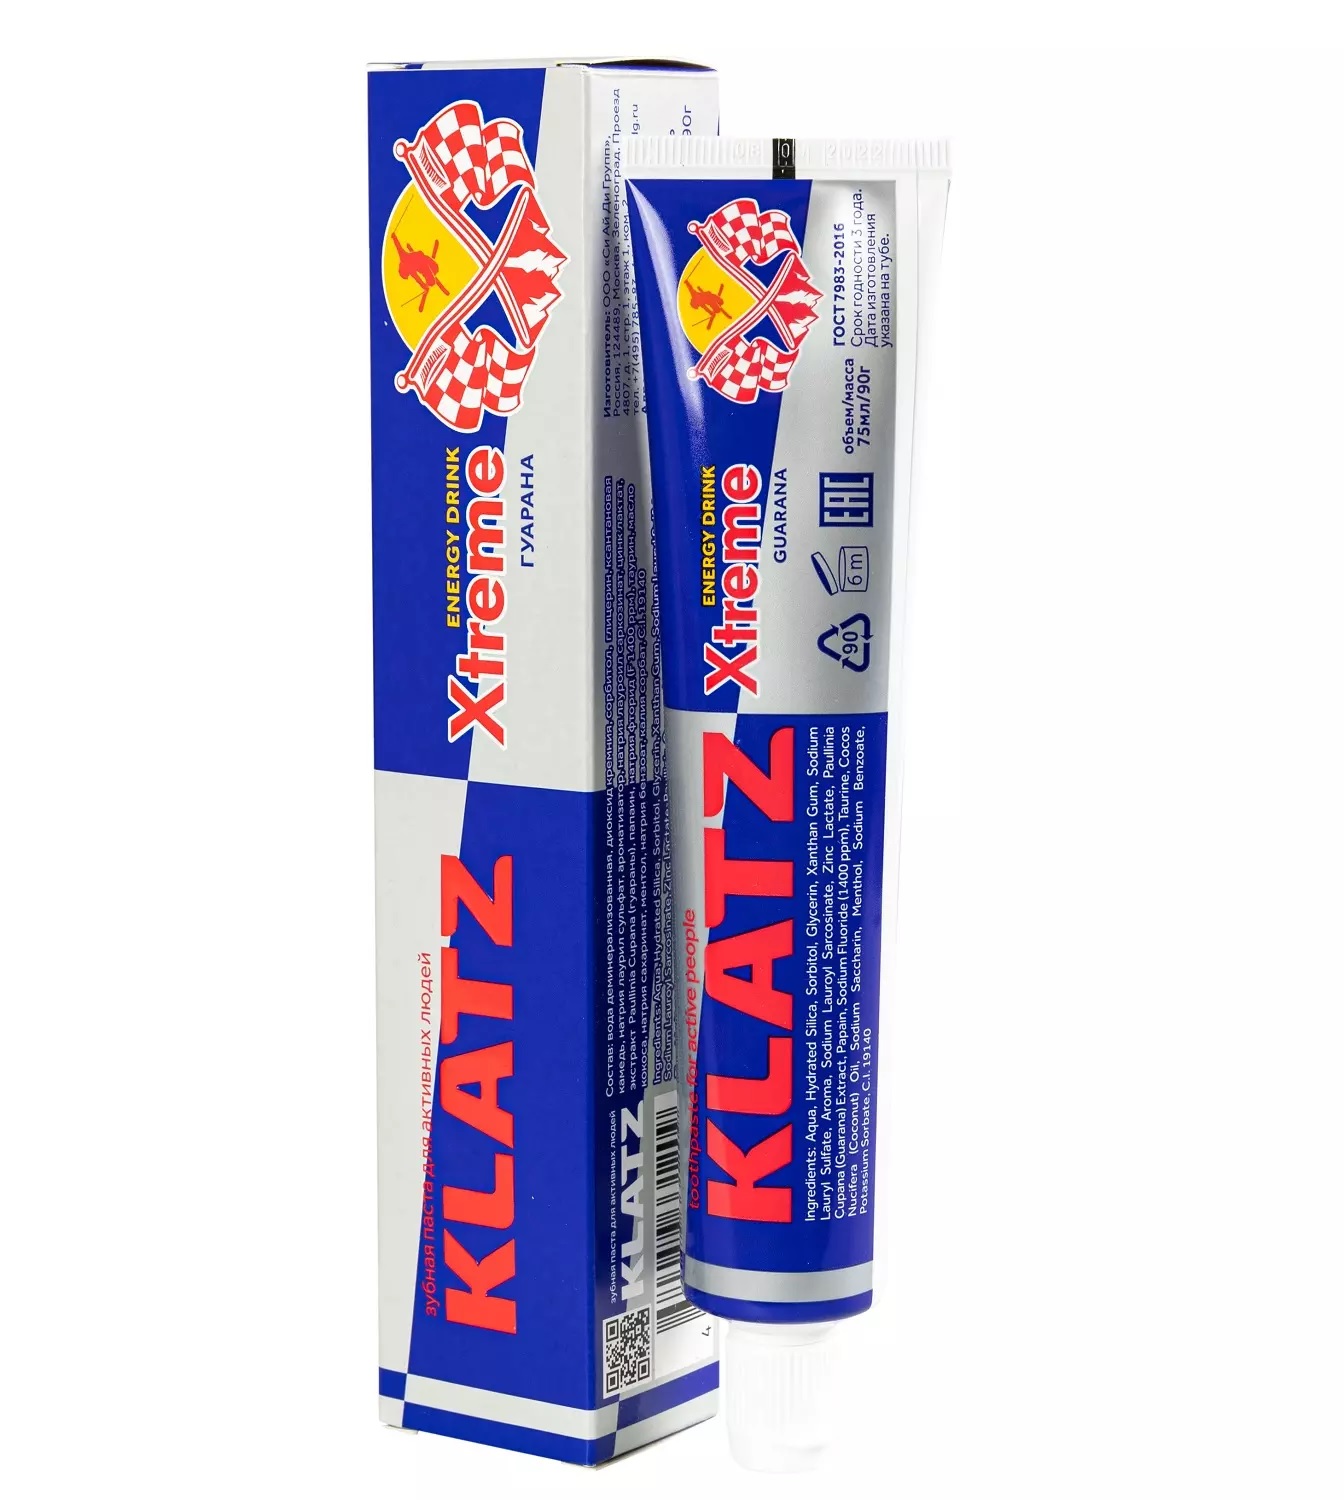 Паста зубная Klatz X-treme Energy Drink для активных людей, гуарана, 75 мл зубная паста для активных людей klatz x treme energy drink женьшень 75мл